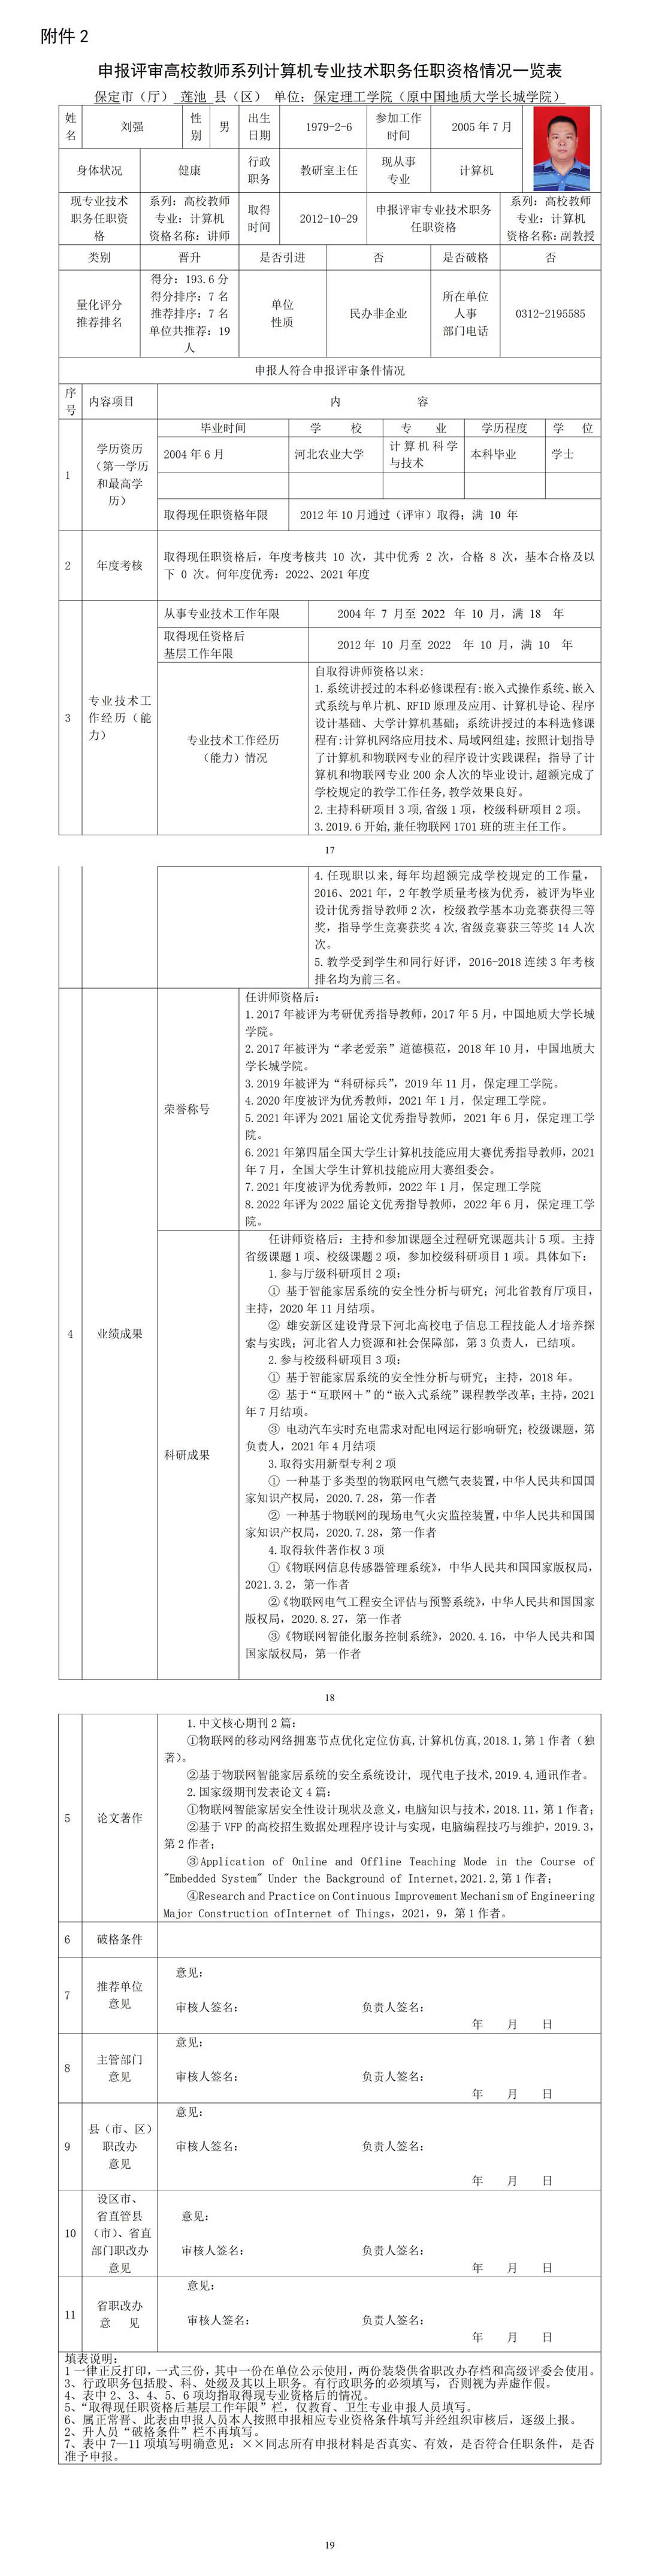 刘强任职资格情况一览表